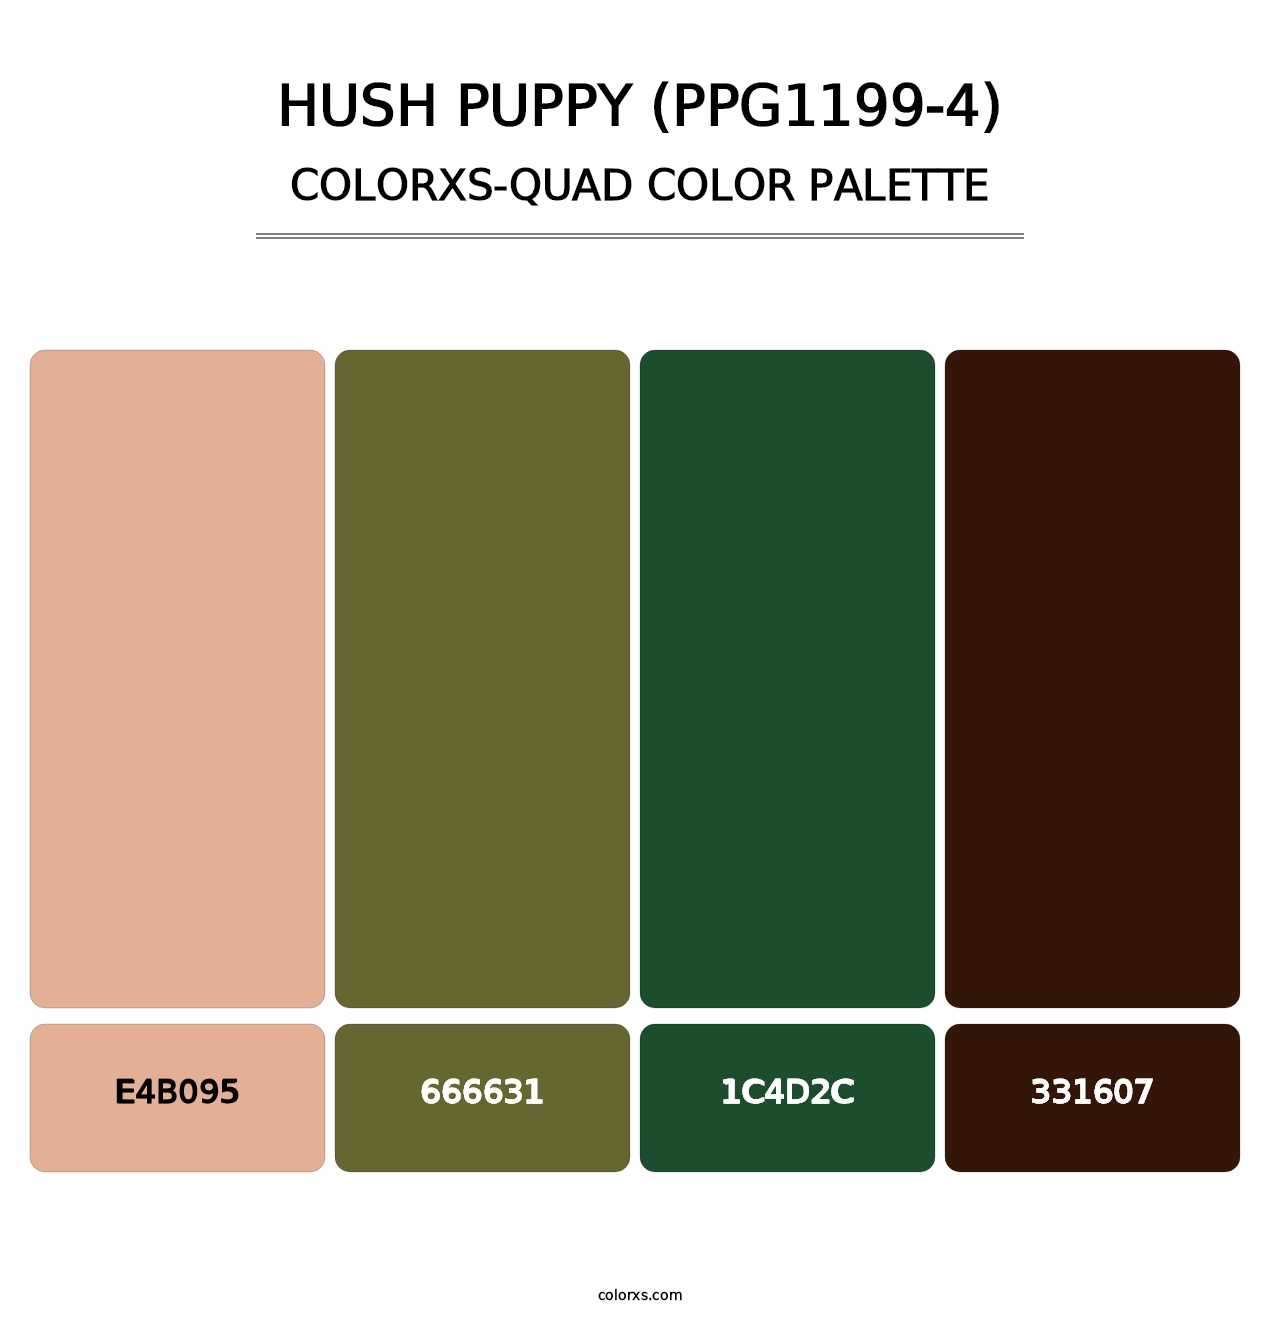 Hush Puppy (PPG1199-4) - Colorxs Quad Palette